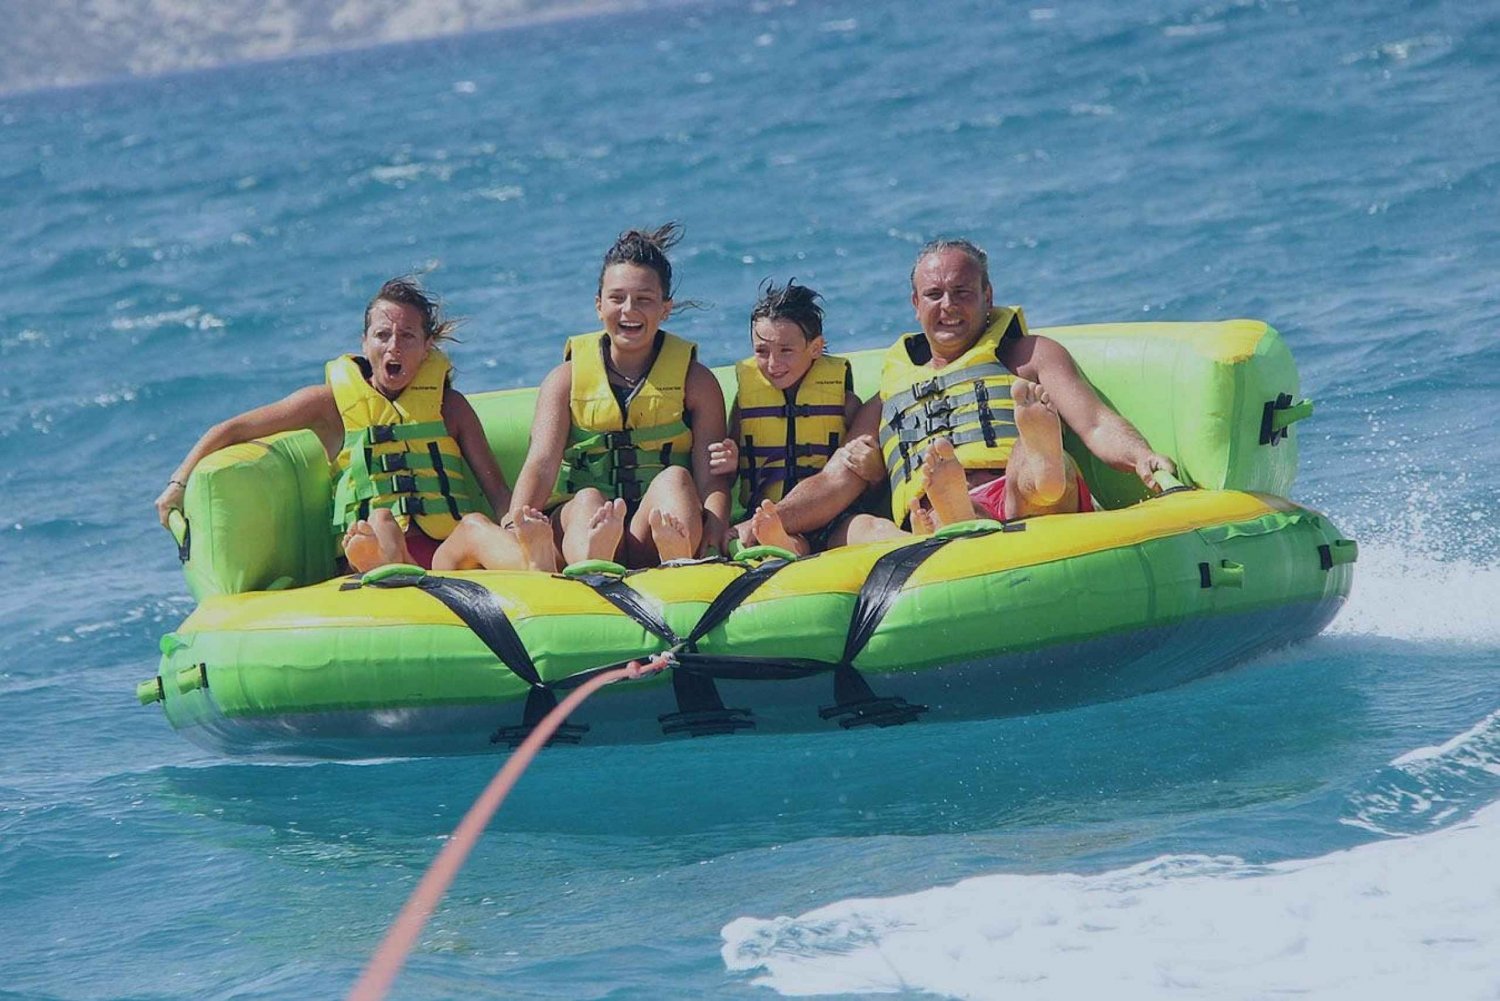 Ibiza: The Roller Coaster Over the Sea